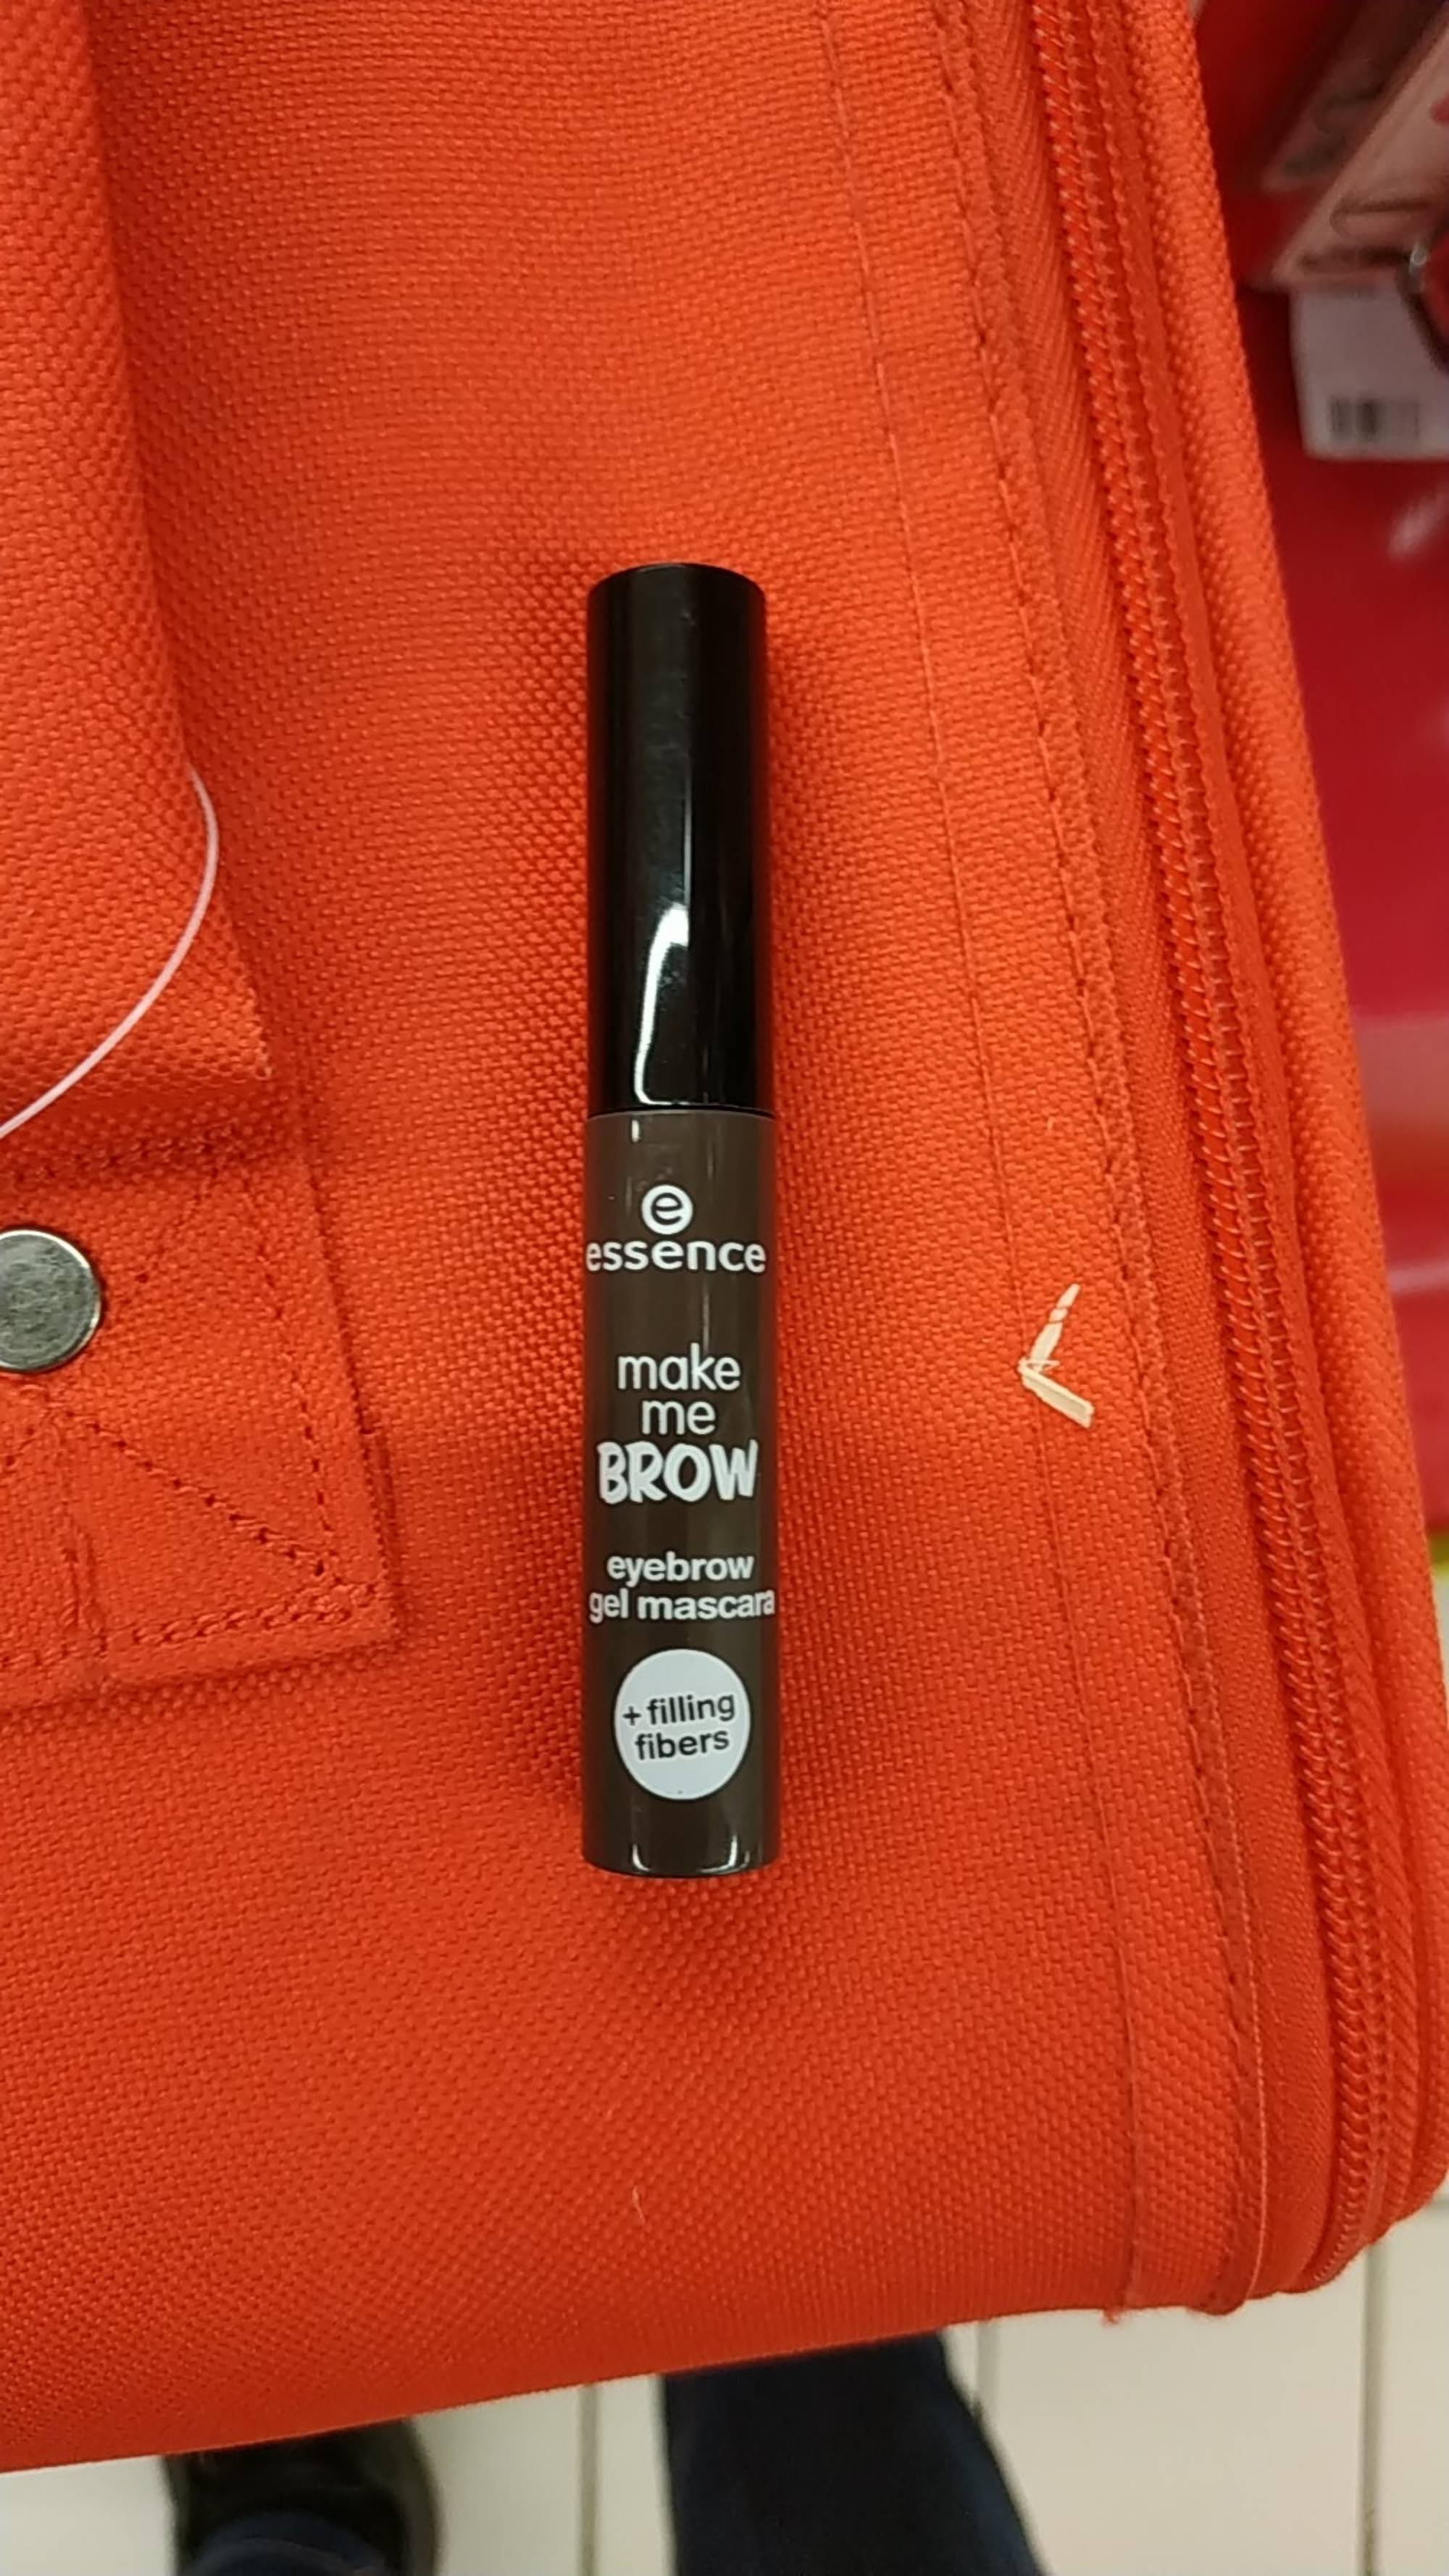 ESSENCE - Make me brow - Eyebrow gel mascara 02 browny brows